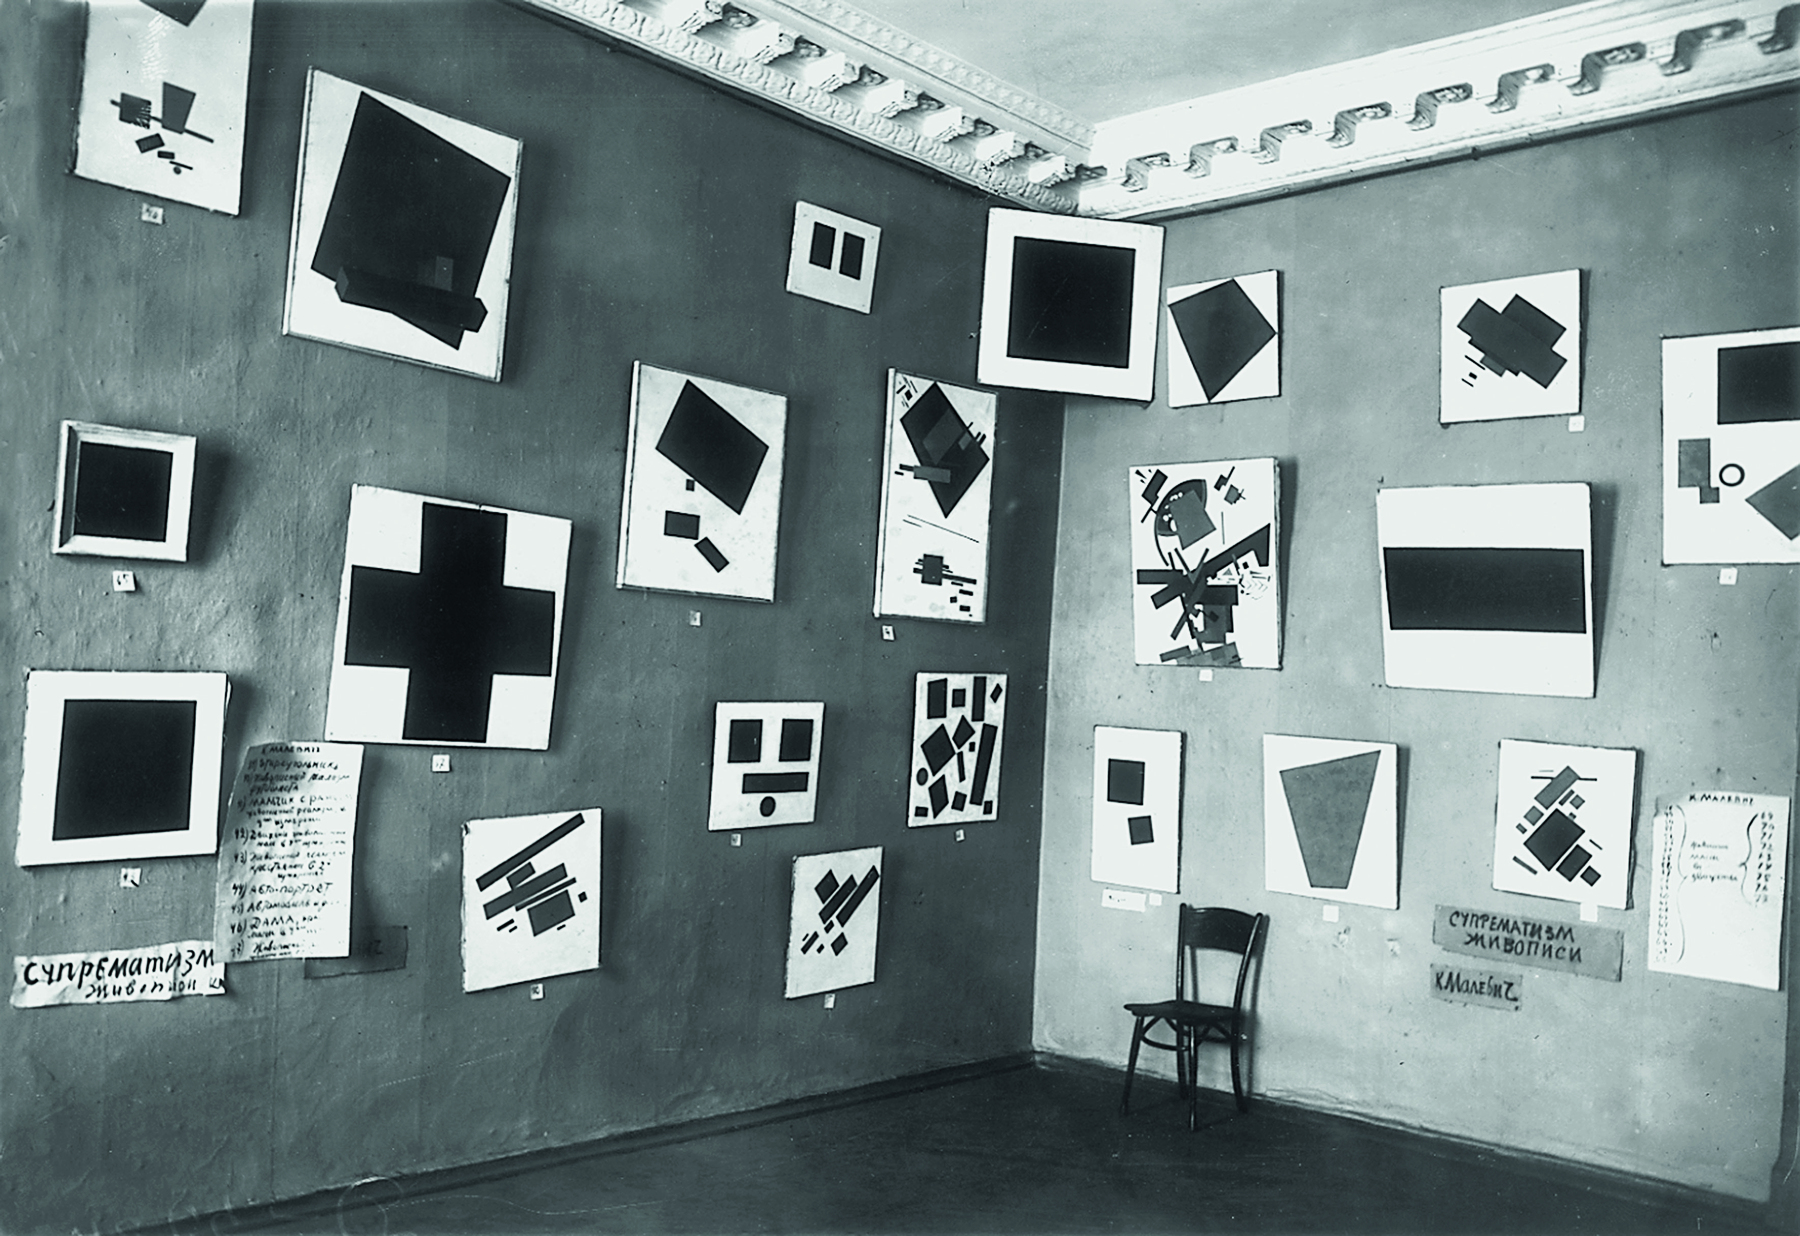 Fotografia em preto e branco. Parede onde estão expostos quadros com formas geométricas diversas.